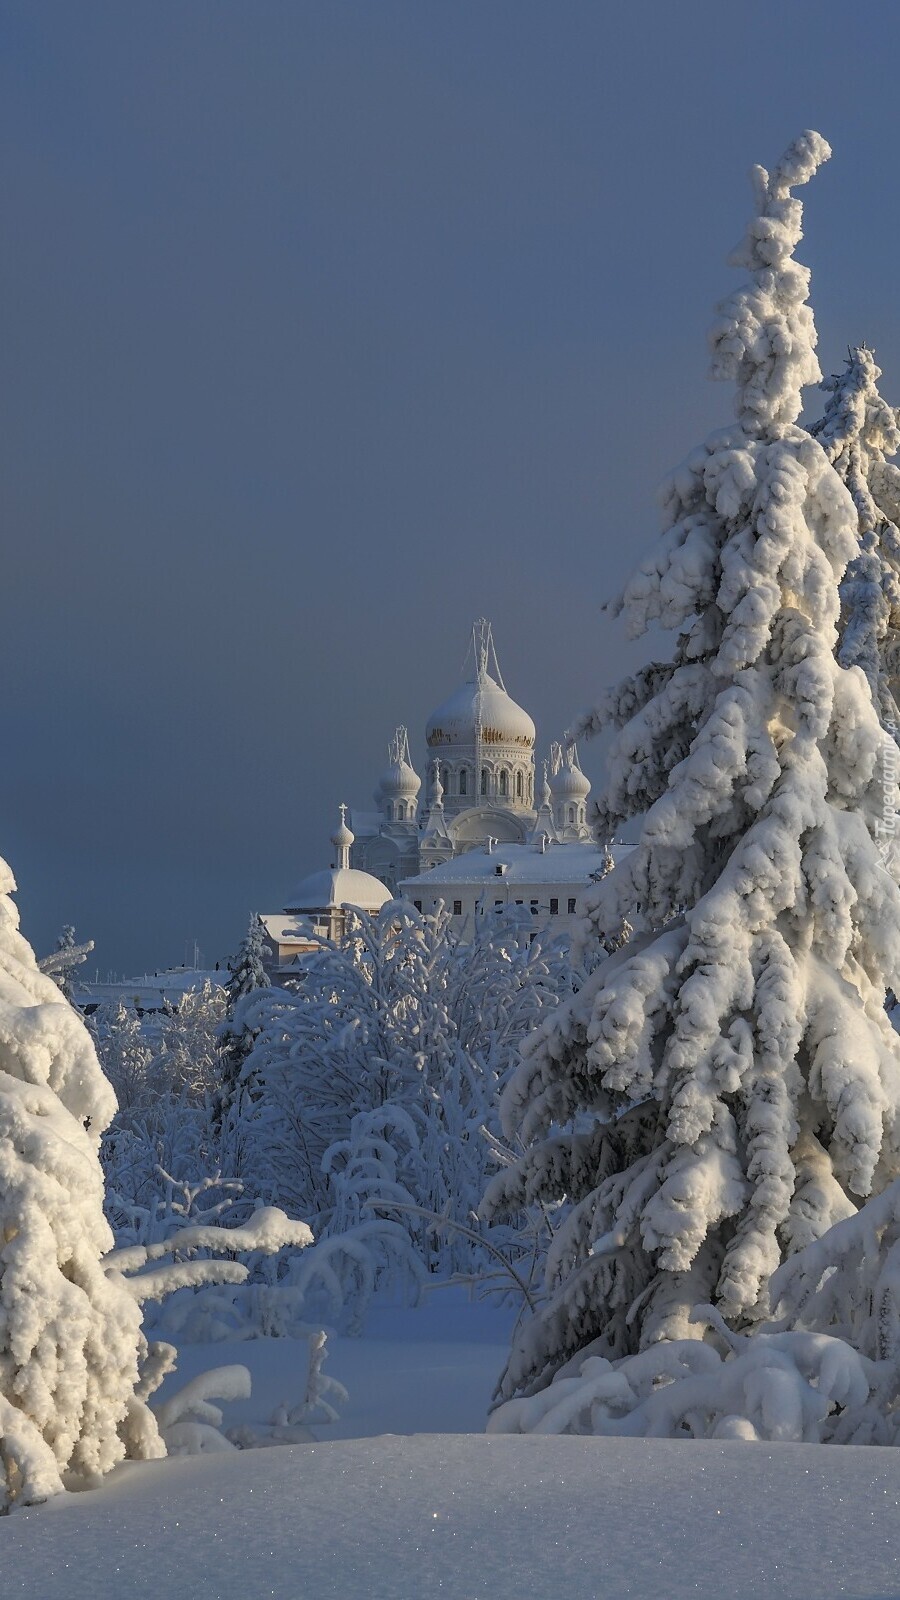 Monaster św Mikołaja w zimowej scenerii